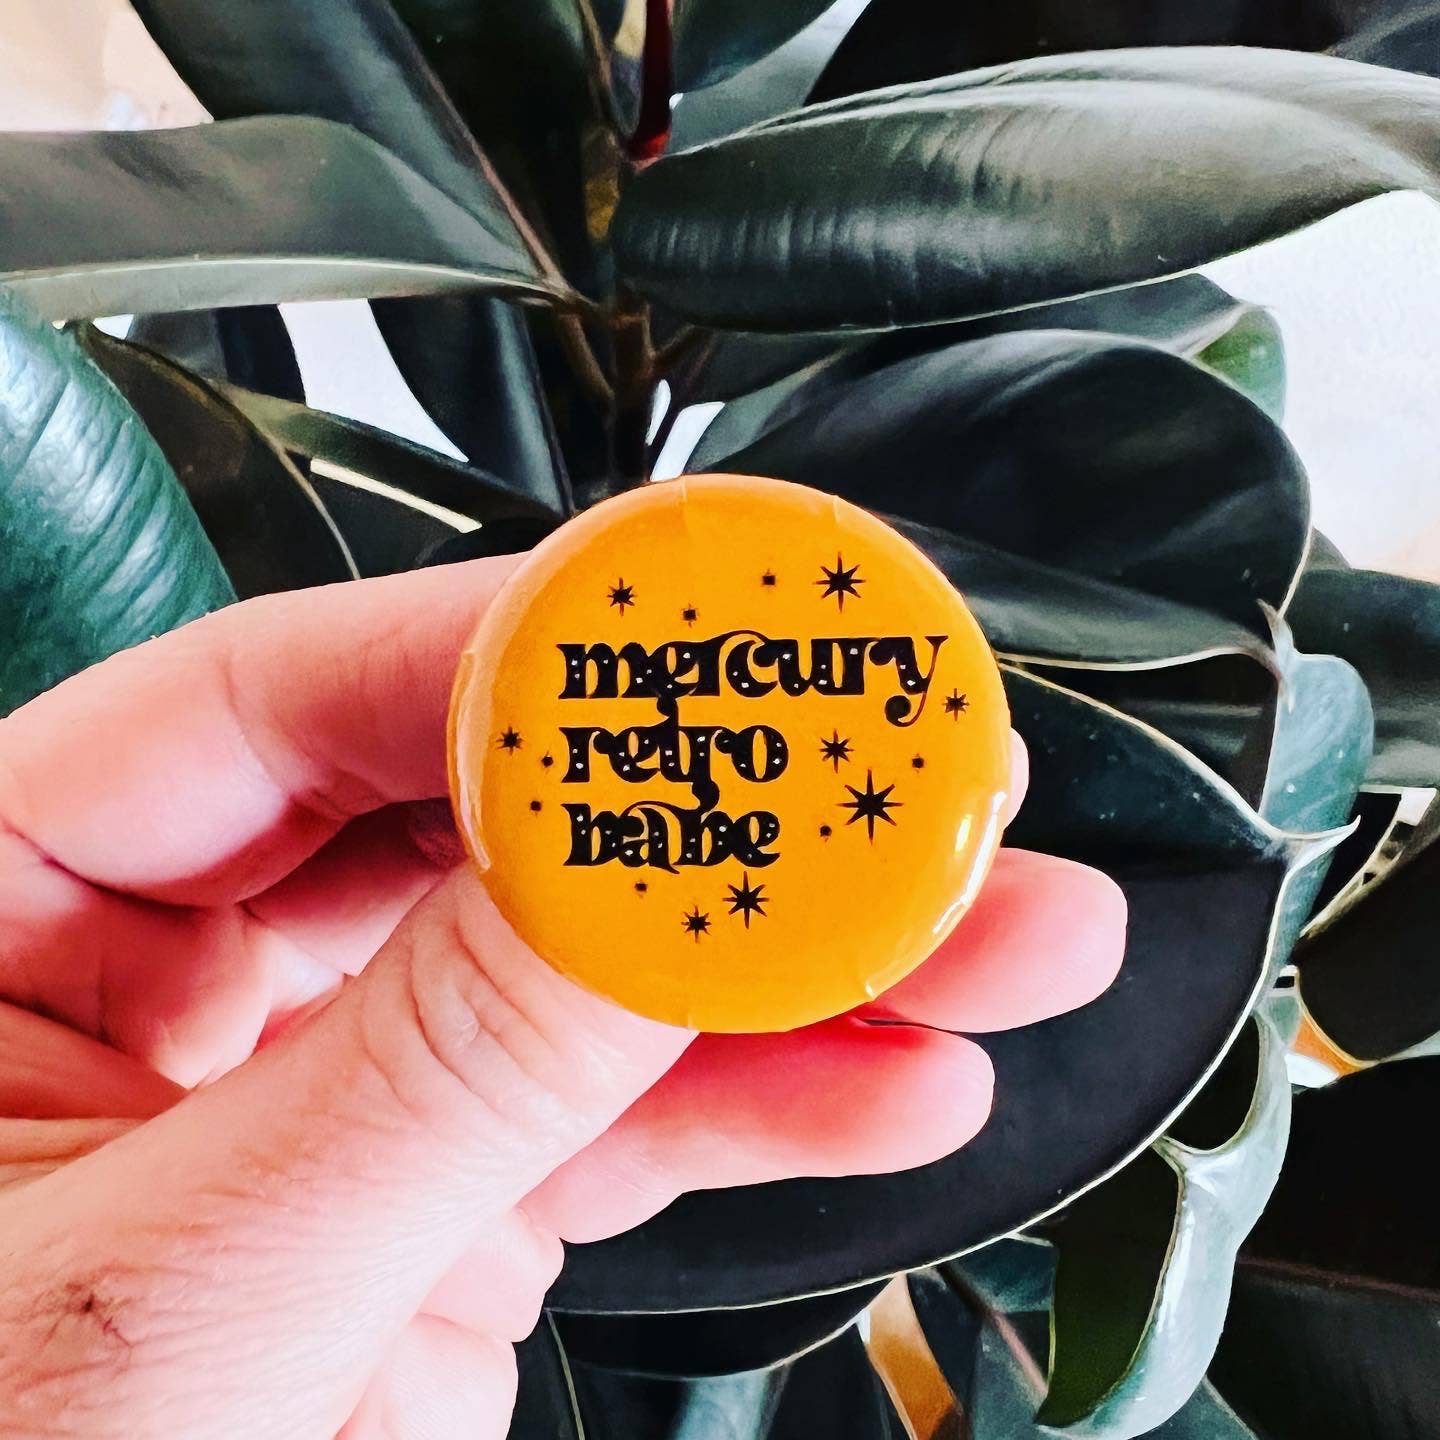 Mercury Retro Babe Button - Spiral Circle